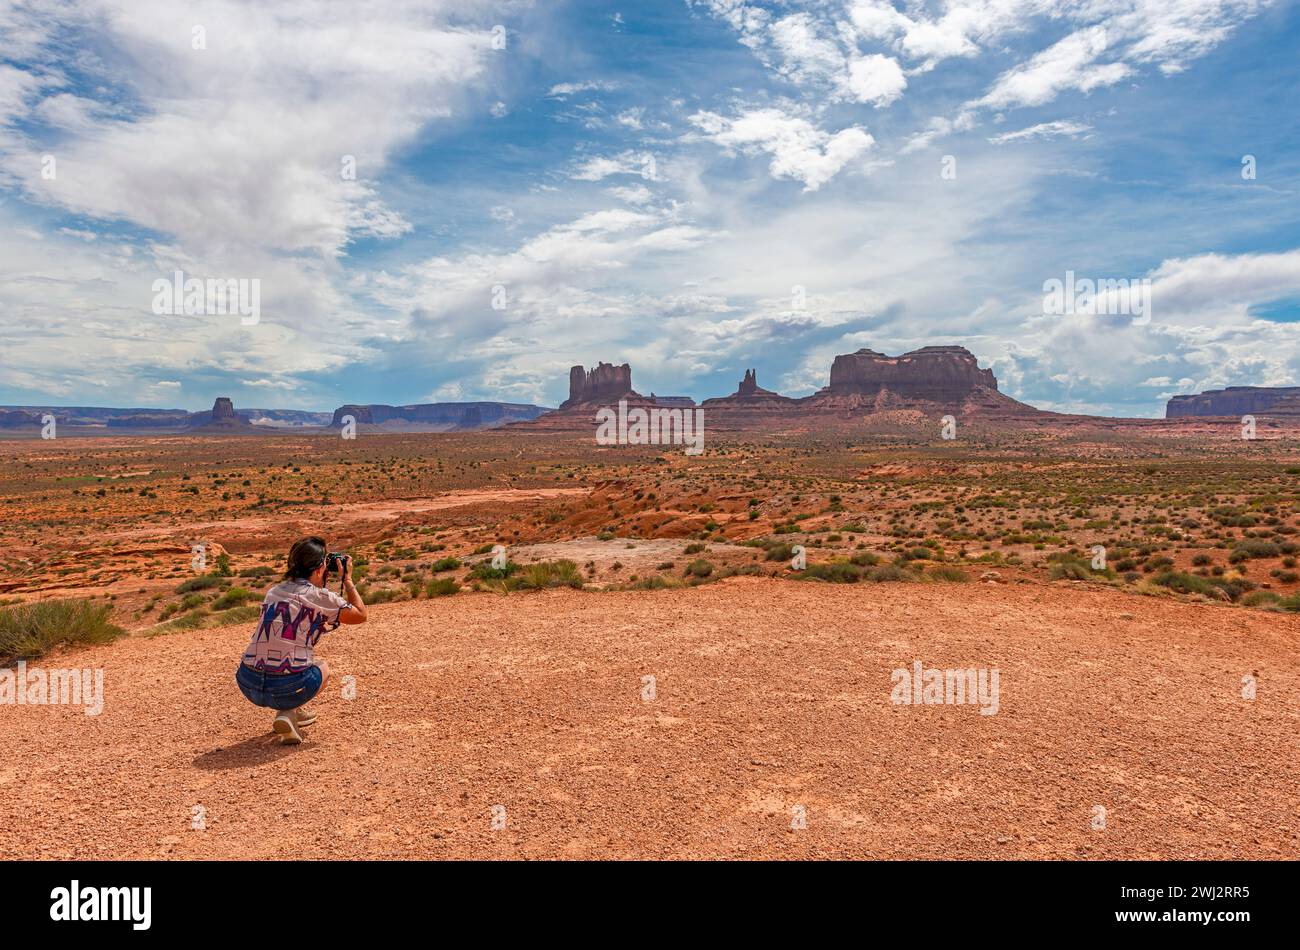 Touriste prenant des photos des buttes du Monument Valley Navajo Tribal Park, Arizona et Utah, États-Unis. Banque D'Images